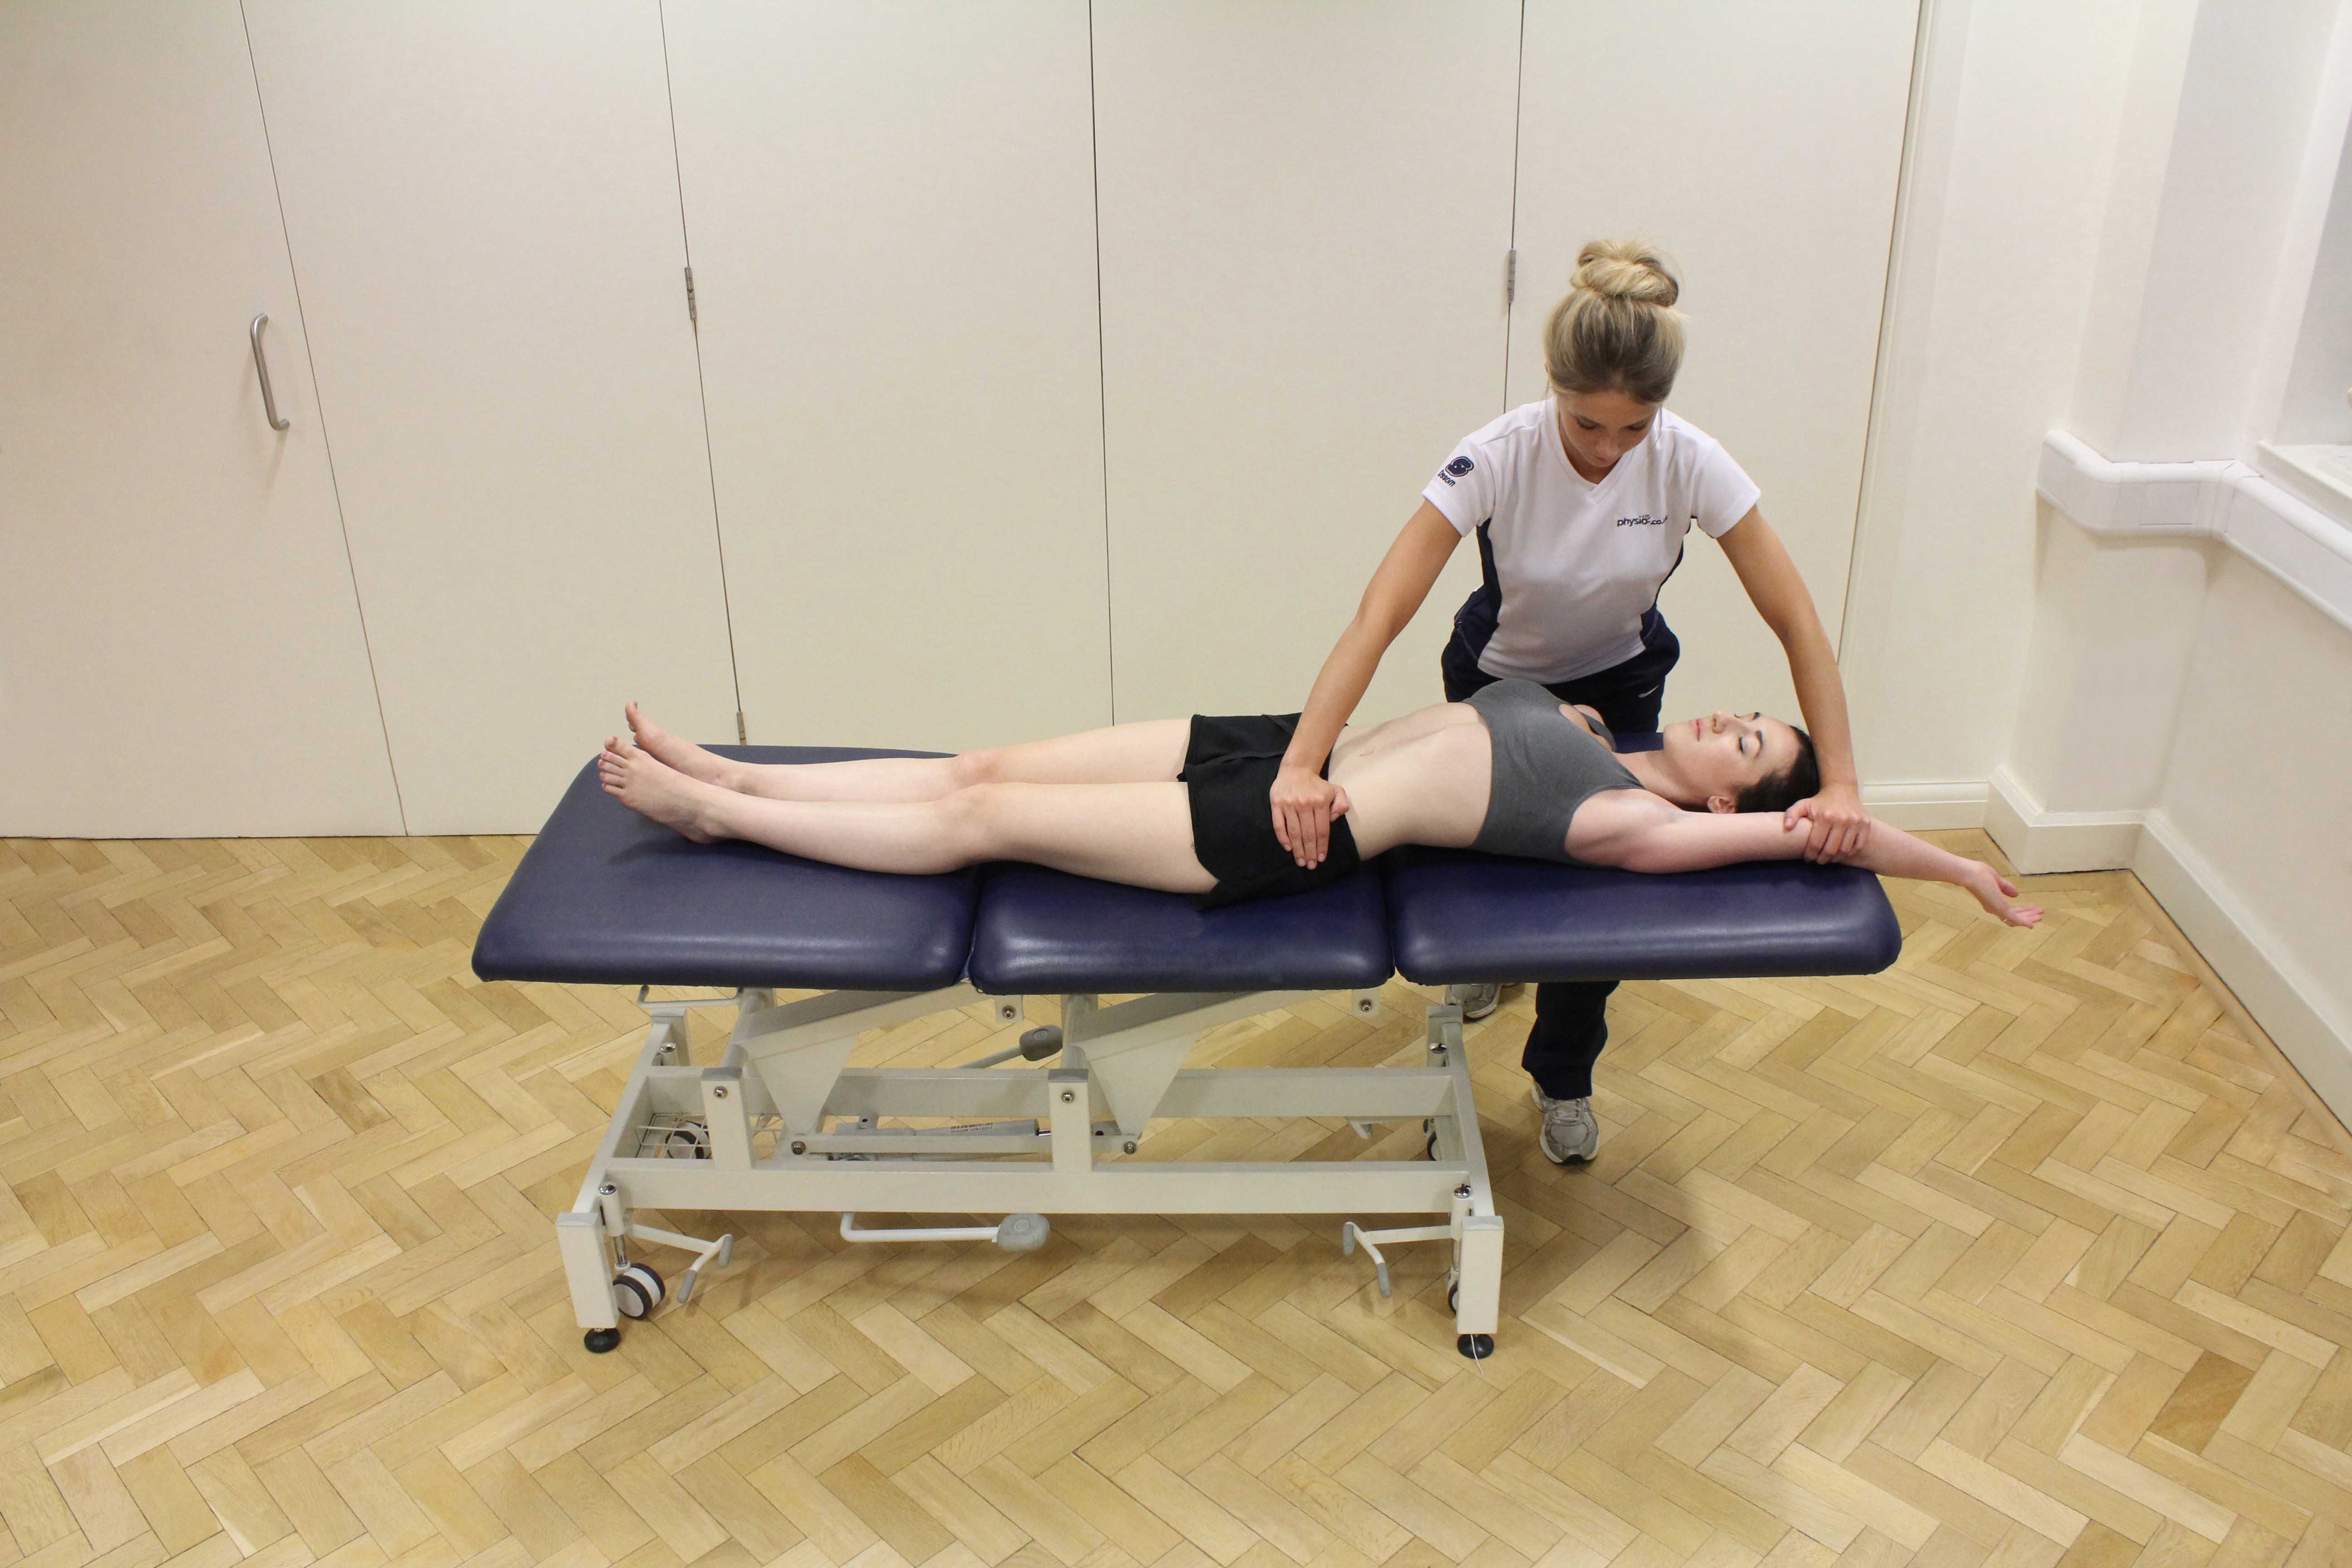 Hip pain - Beaumaris Physiotherapy